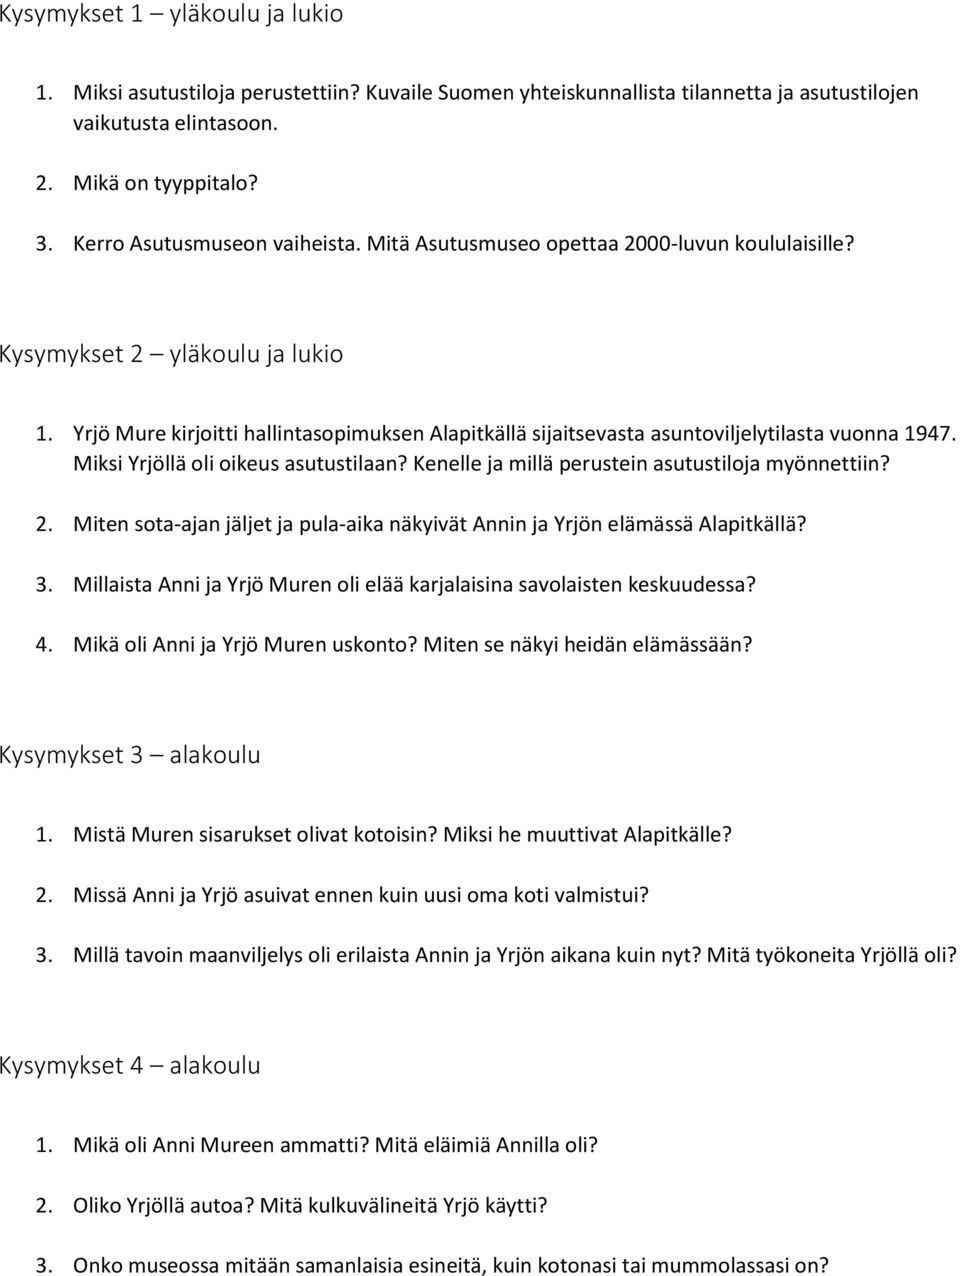 Yrjö Mure kirjoitti hallintasopimuksen Alapitkällä sijaitsevasta asuntoviljelytilasta vuonna 1947. Miksi Yrjöllä oli oikeus asutustilaan? Kenelle ja millä perustein asutustiloja myönnettiin? 2.